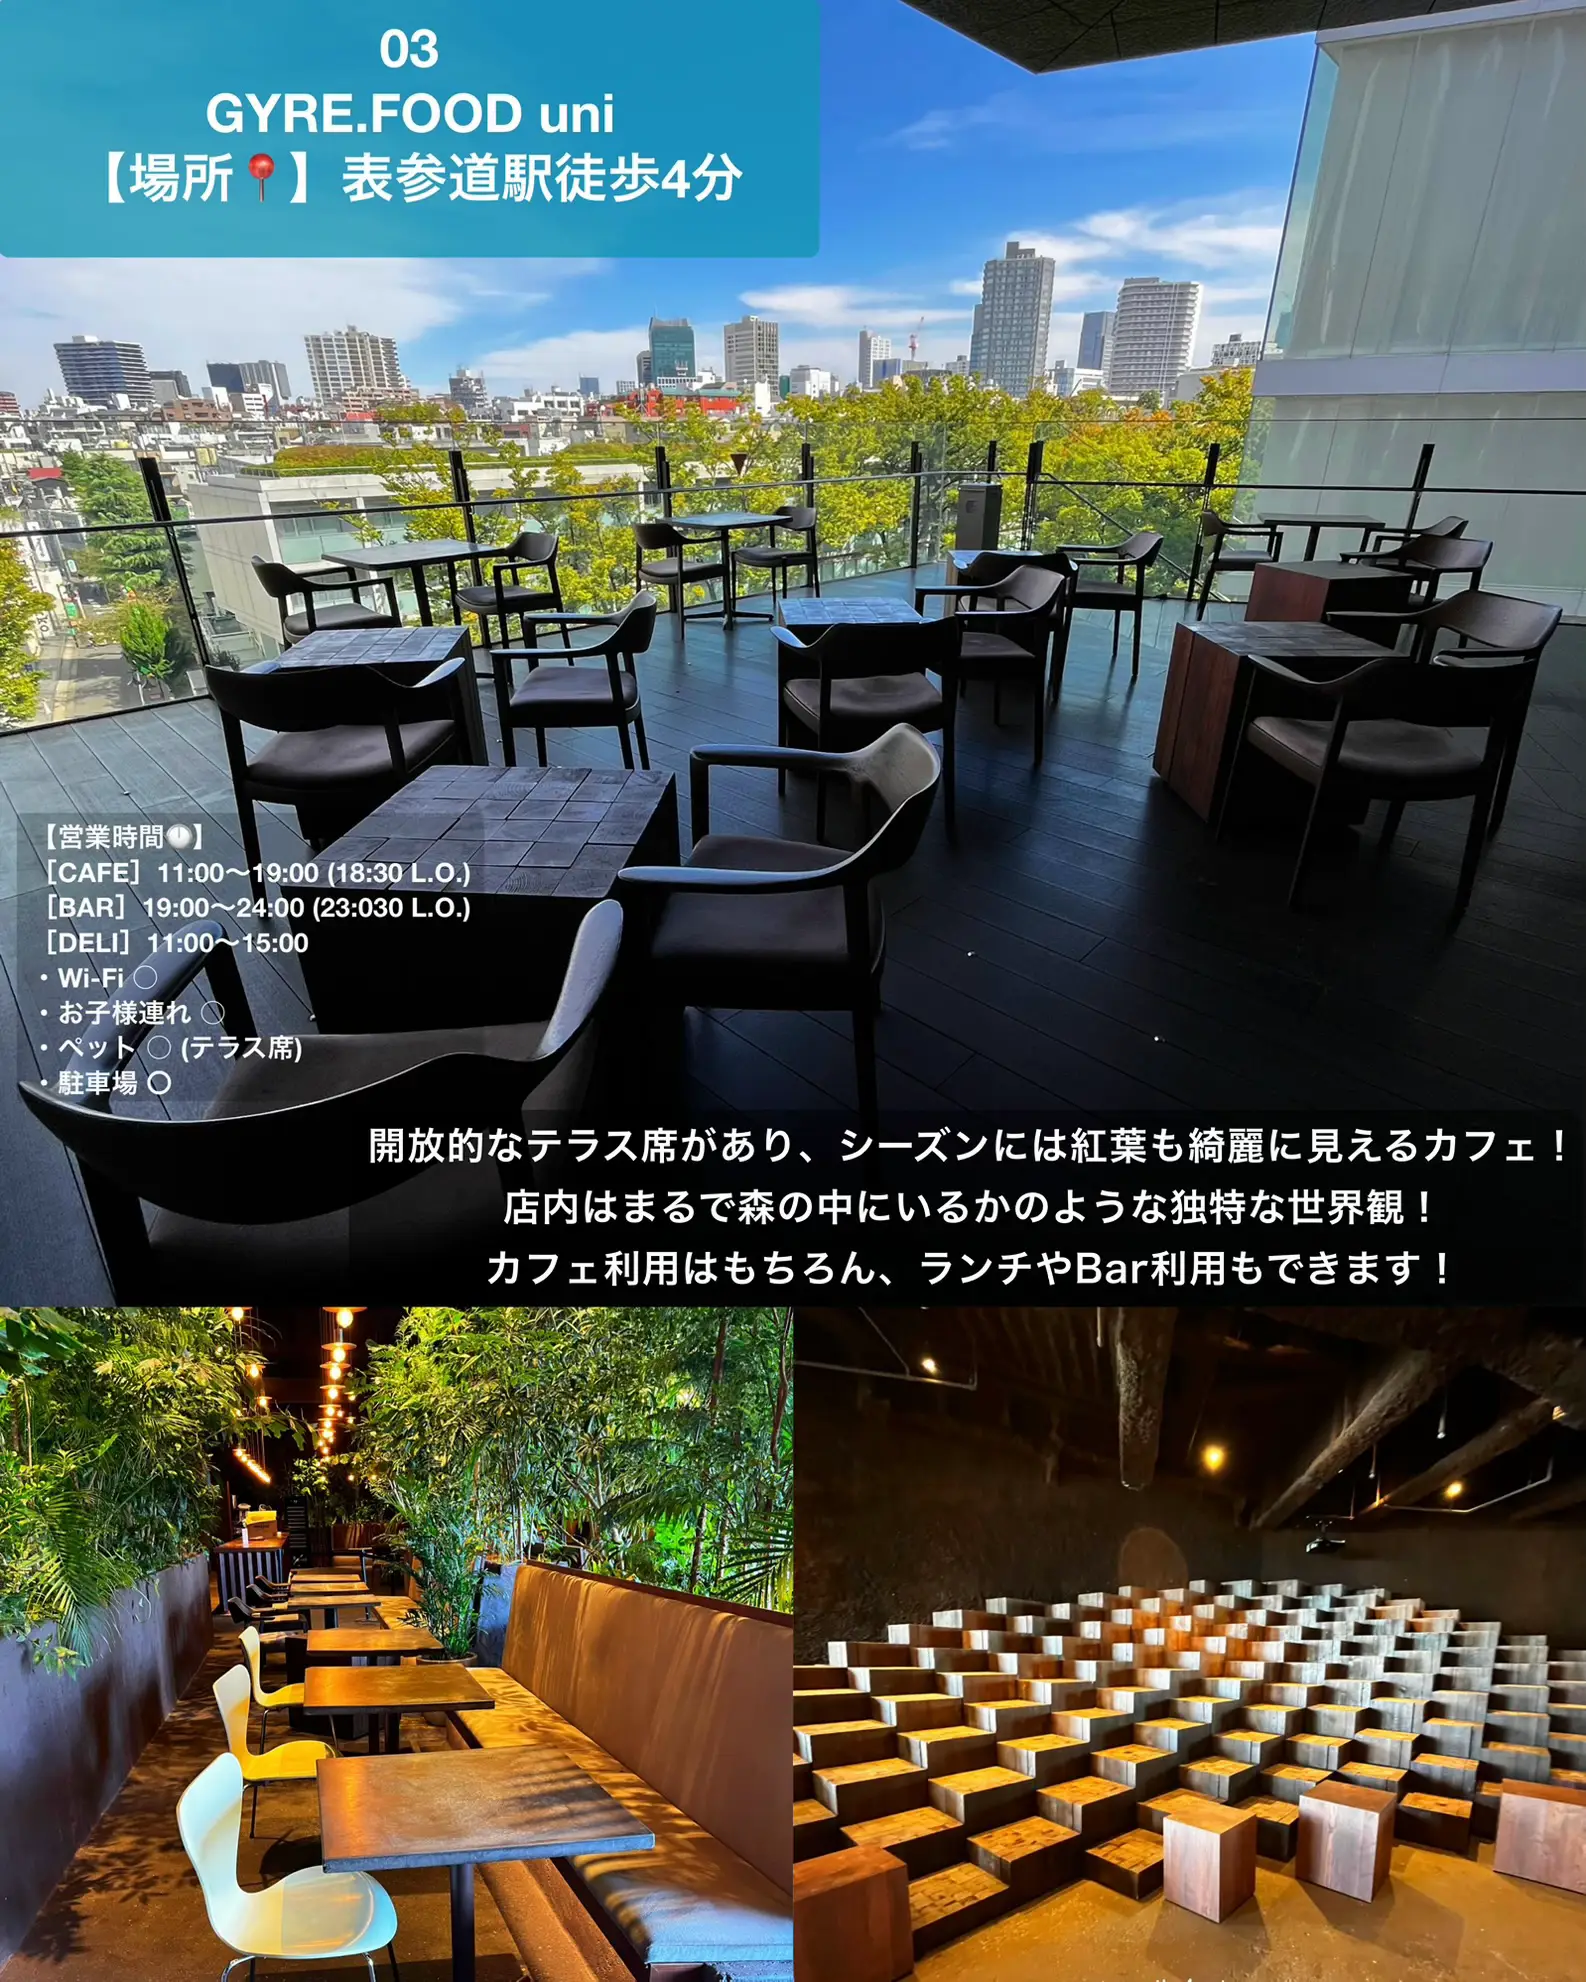 カフェ巡り東京北区 - Lemon8検索